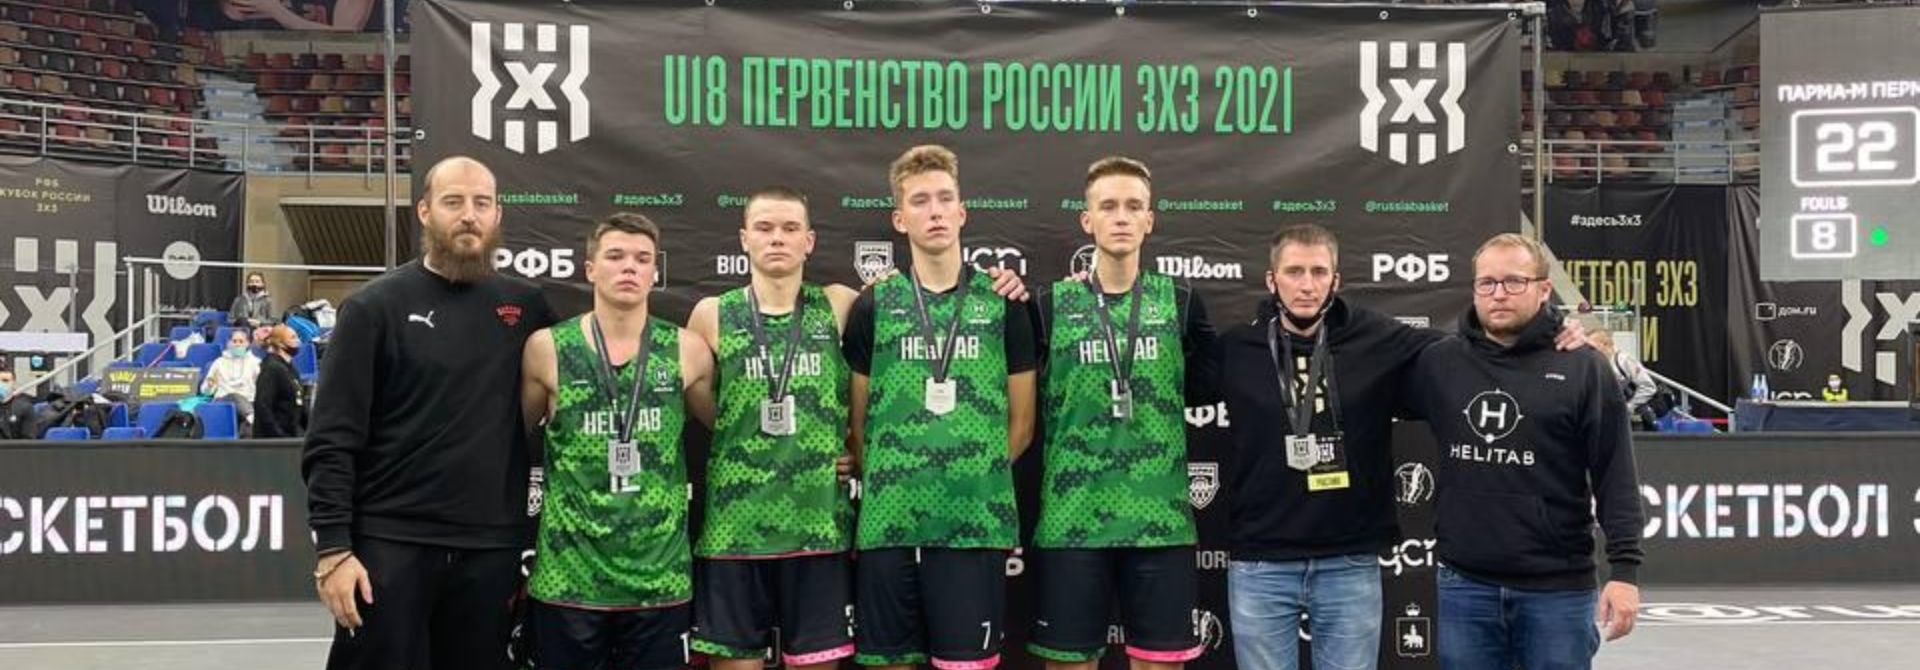 Анатолий Гюнтер – вице-чемпион Первенства России U18 по баскетболу 3x3!